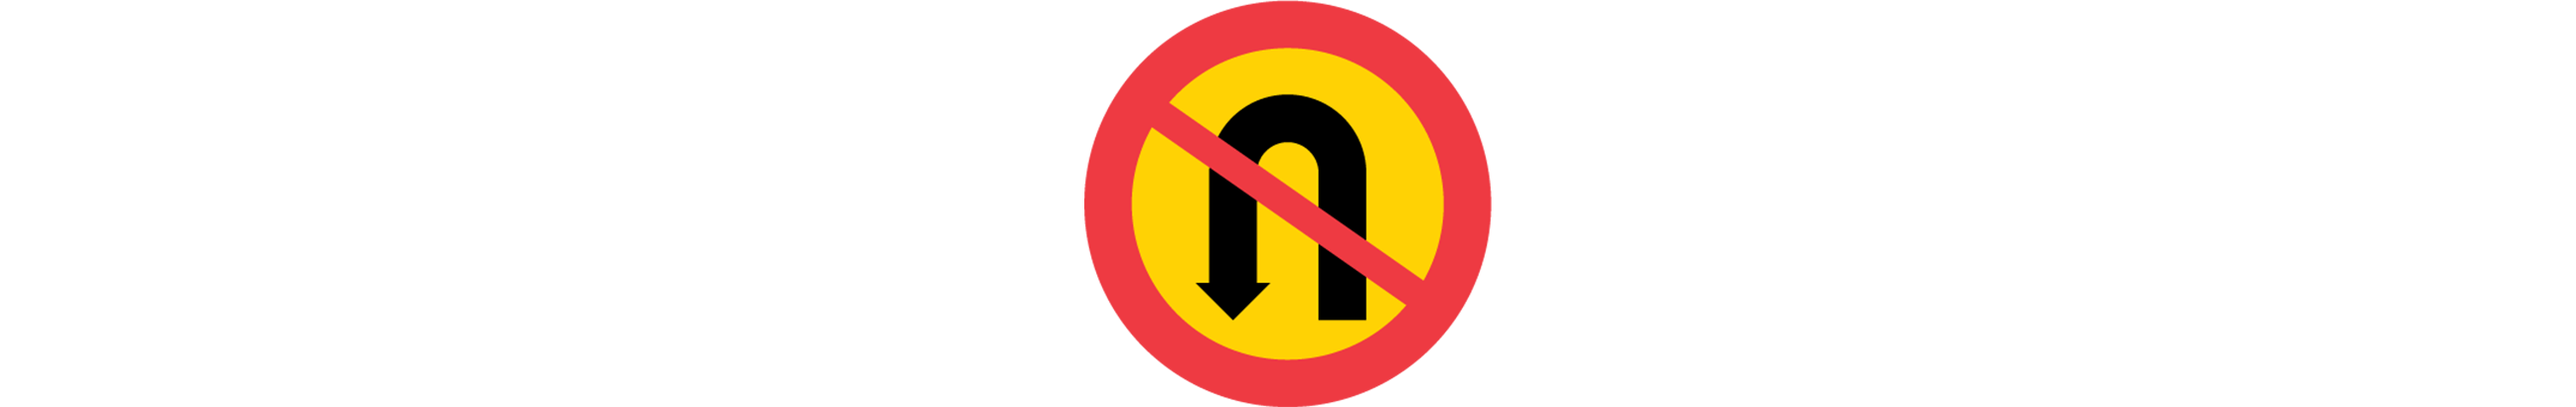 vägmärke för u-sväng förbjudet